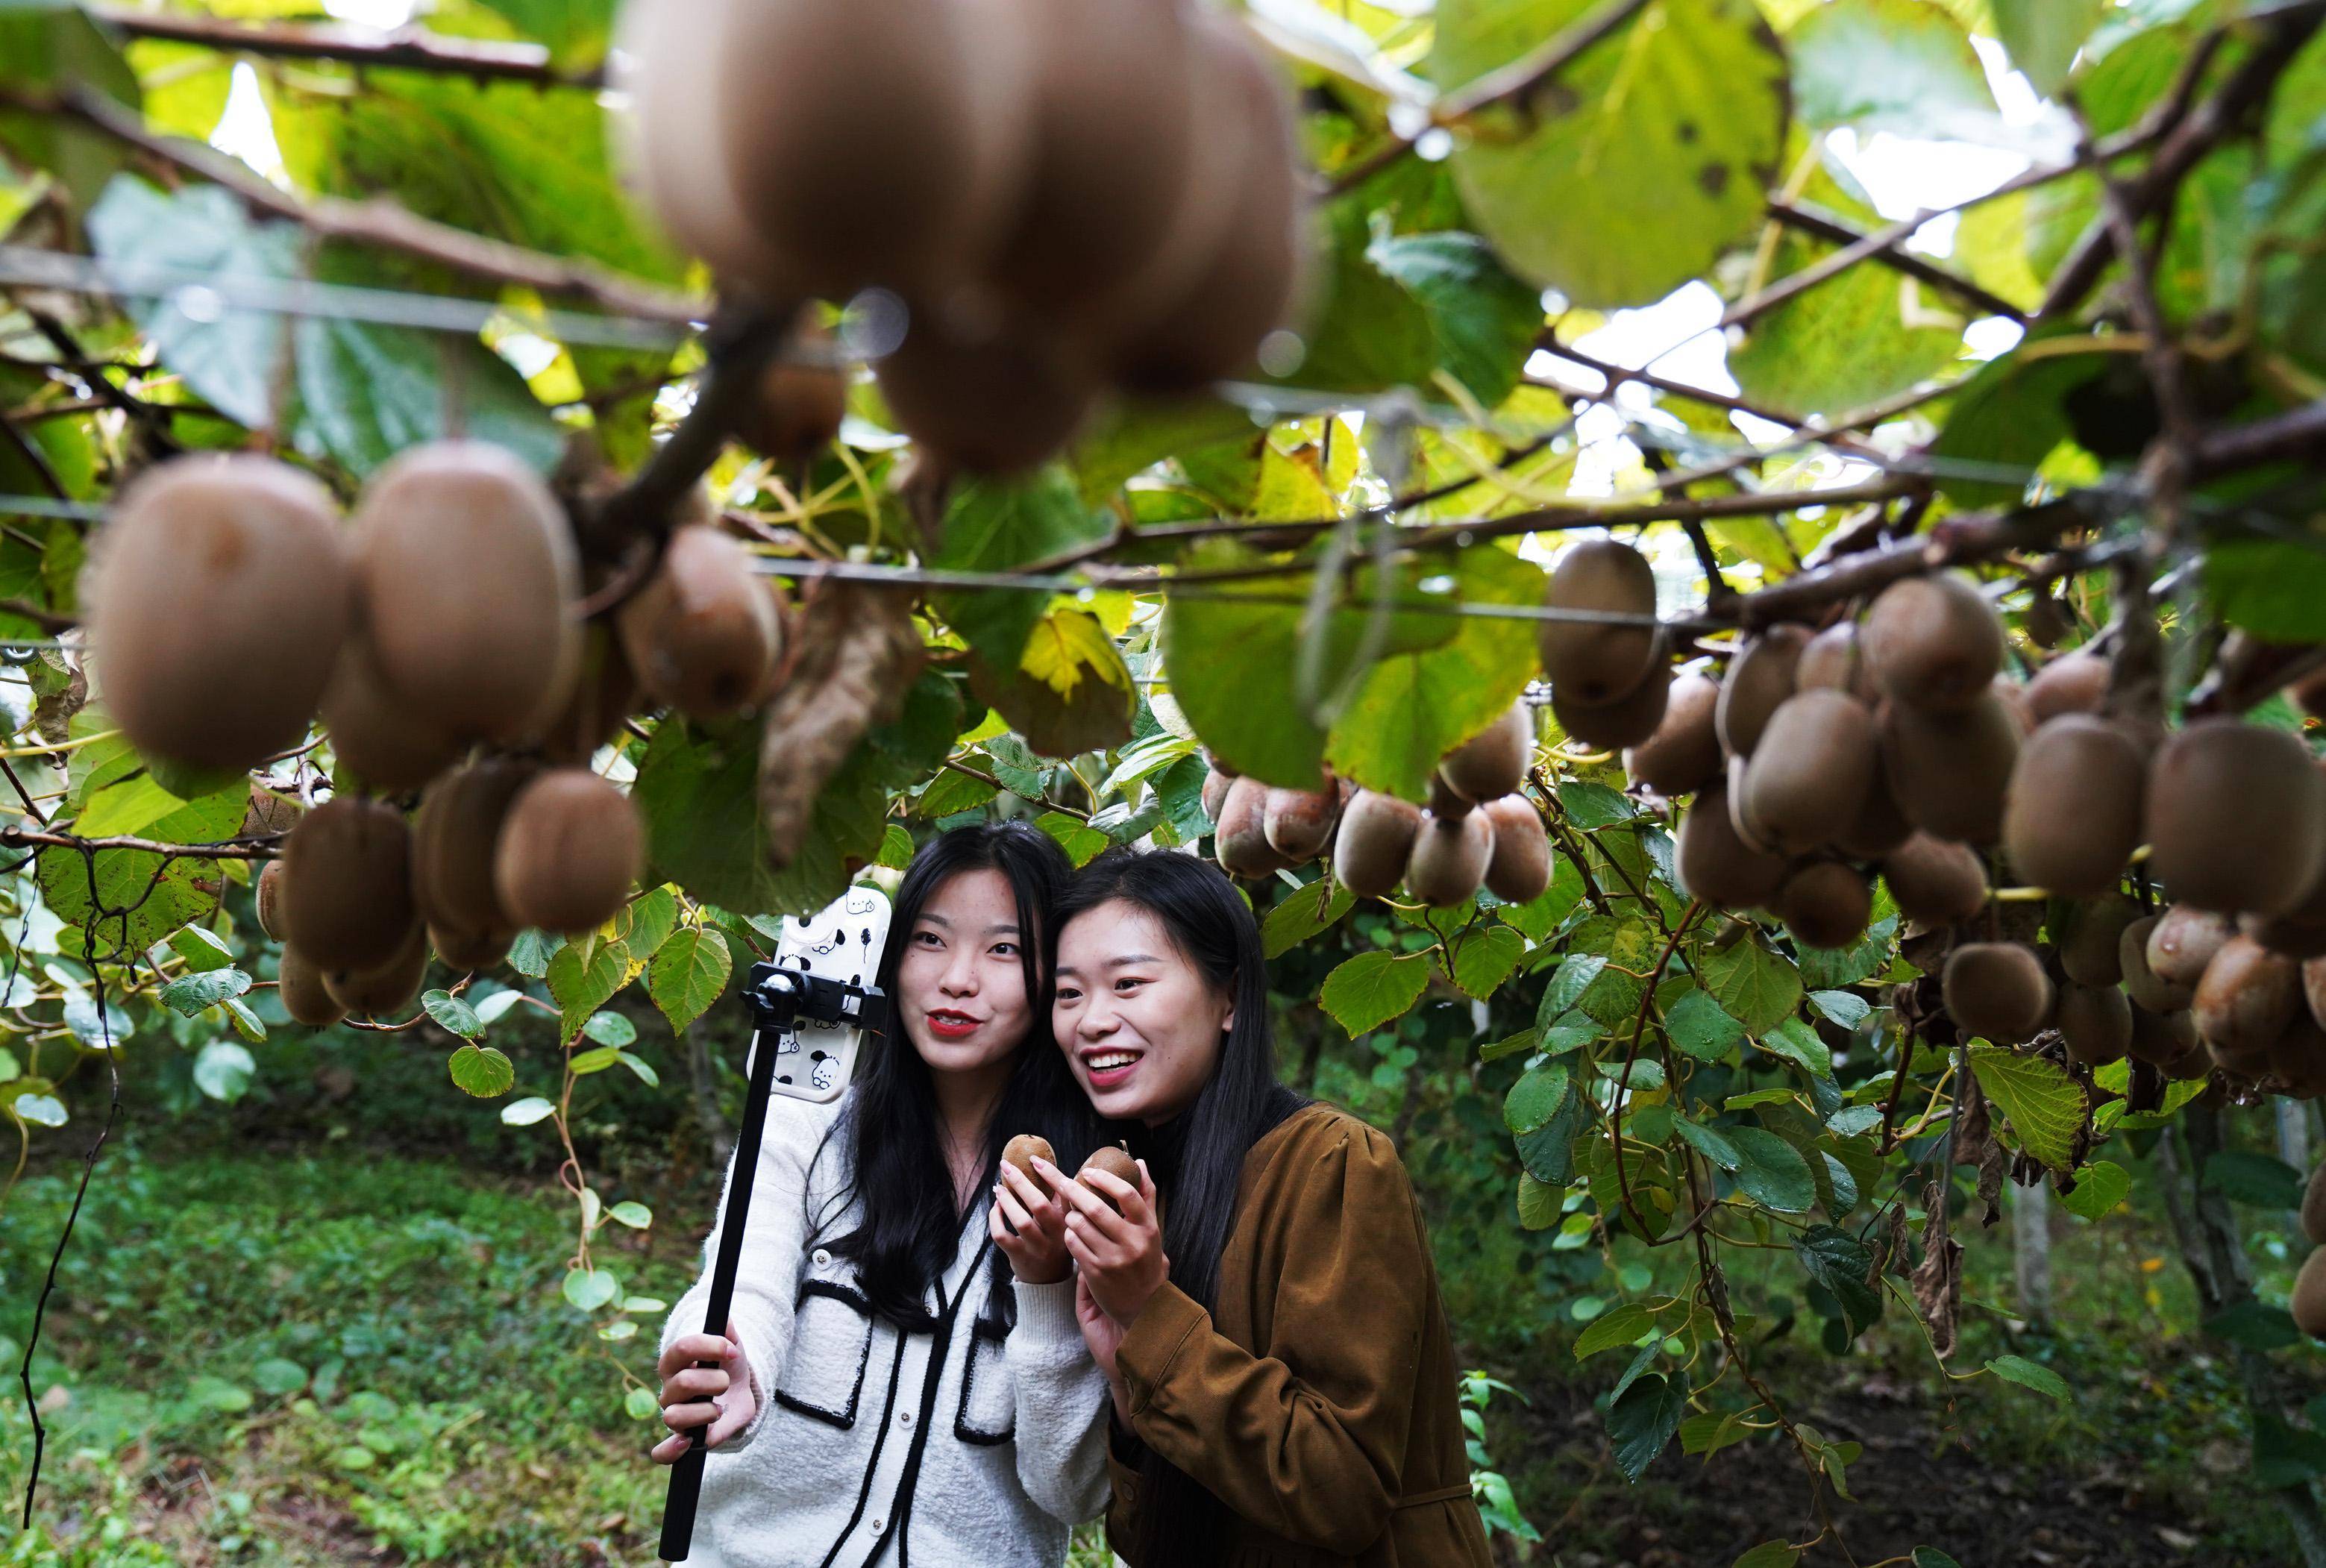 目前,奉新县猕猴桃栽培面积达95万亩,从业